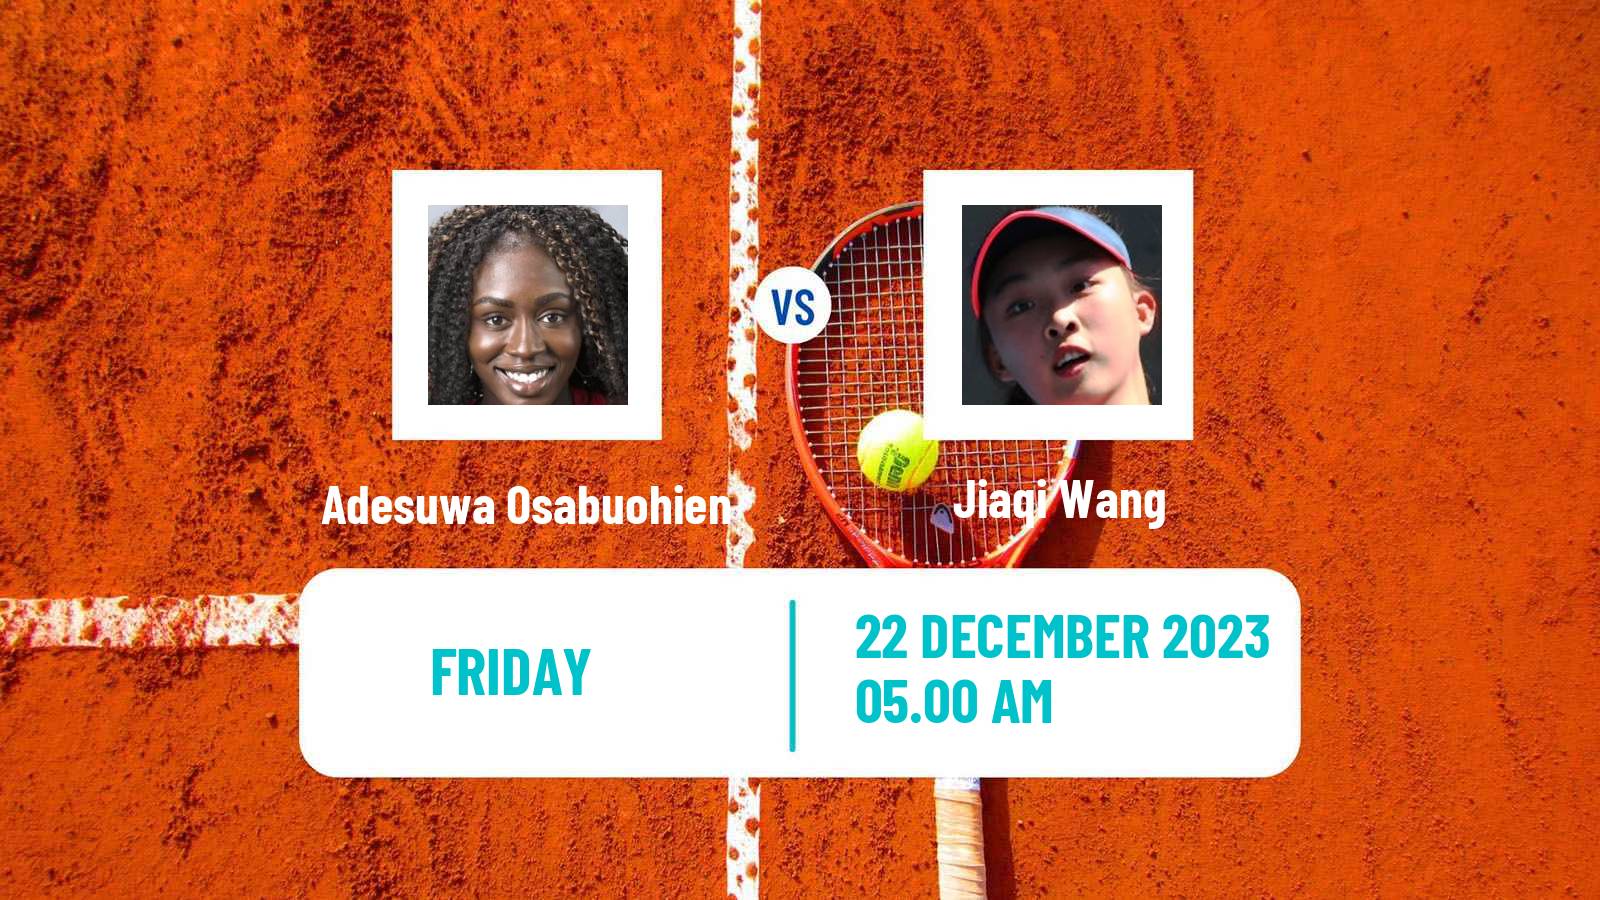 Tennis ITF W15 Monastir 43 Women Adesuwa Osabuohien - Jiaqi Wang